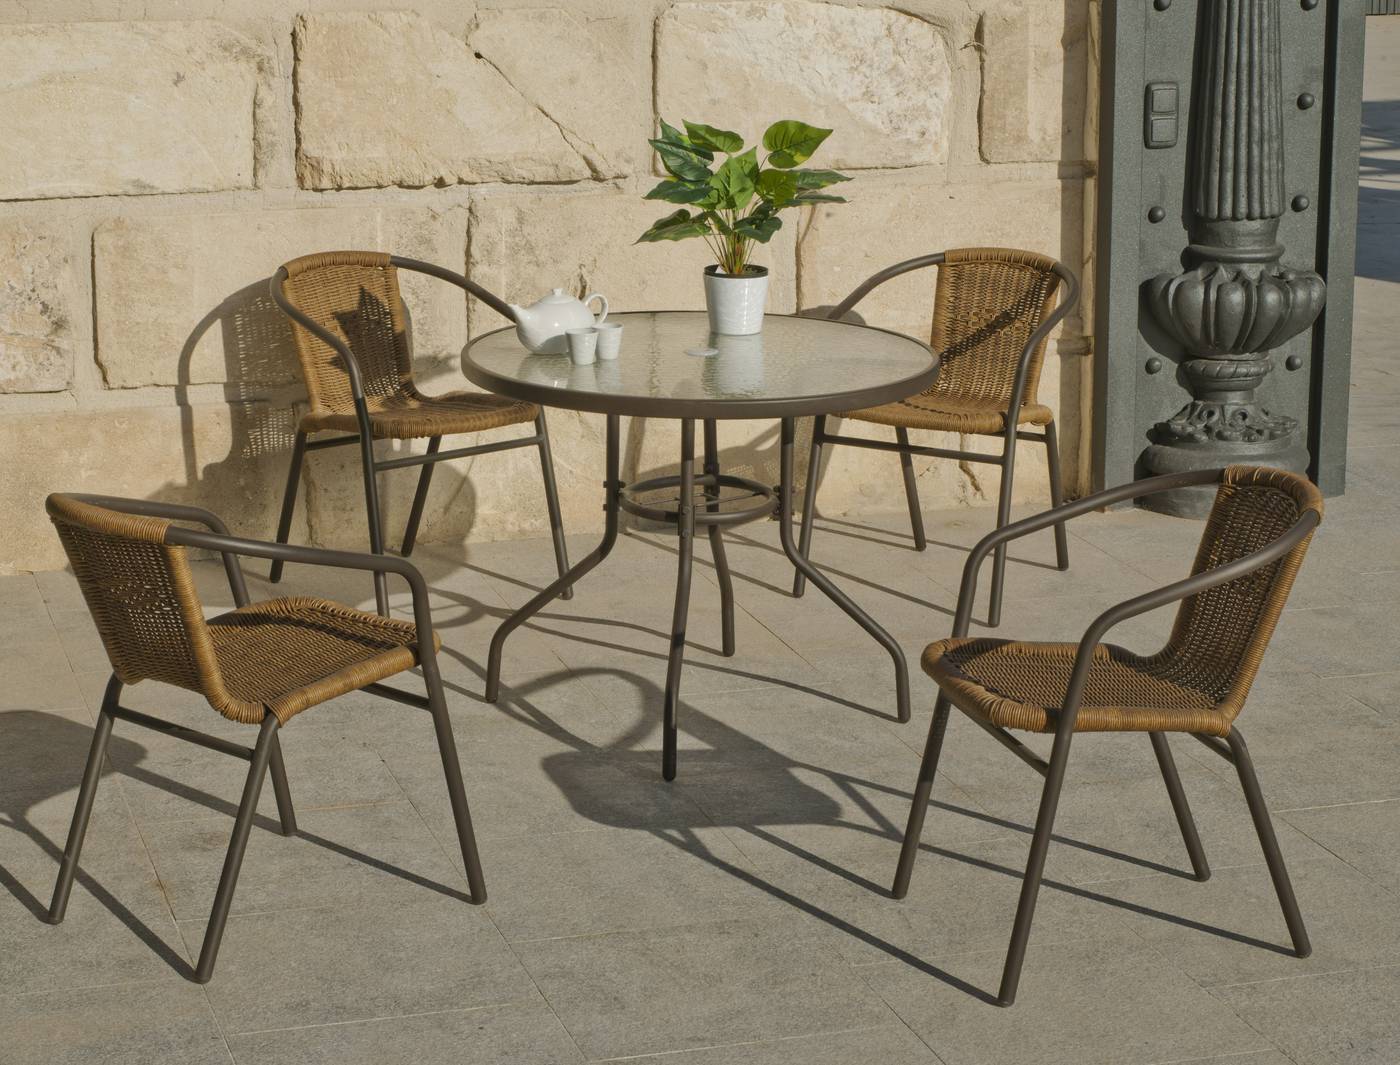 Conjunto para jardín de aluminio color bronce: mesa redonda de 90 cm. con tapa de cristal templado y 4 sillones de wicker reforzado